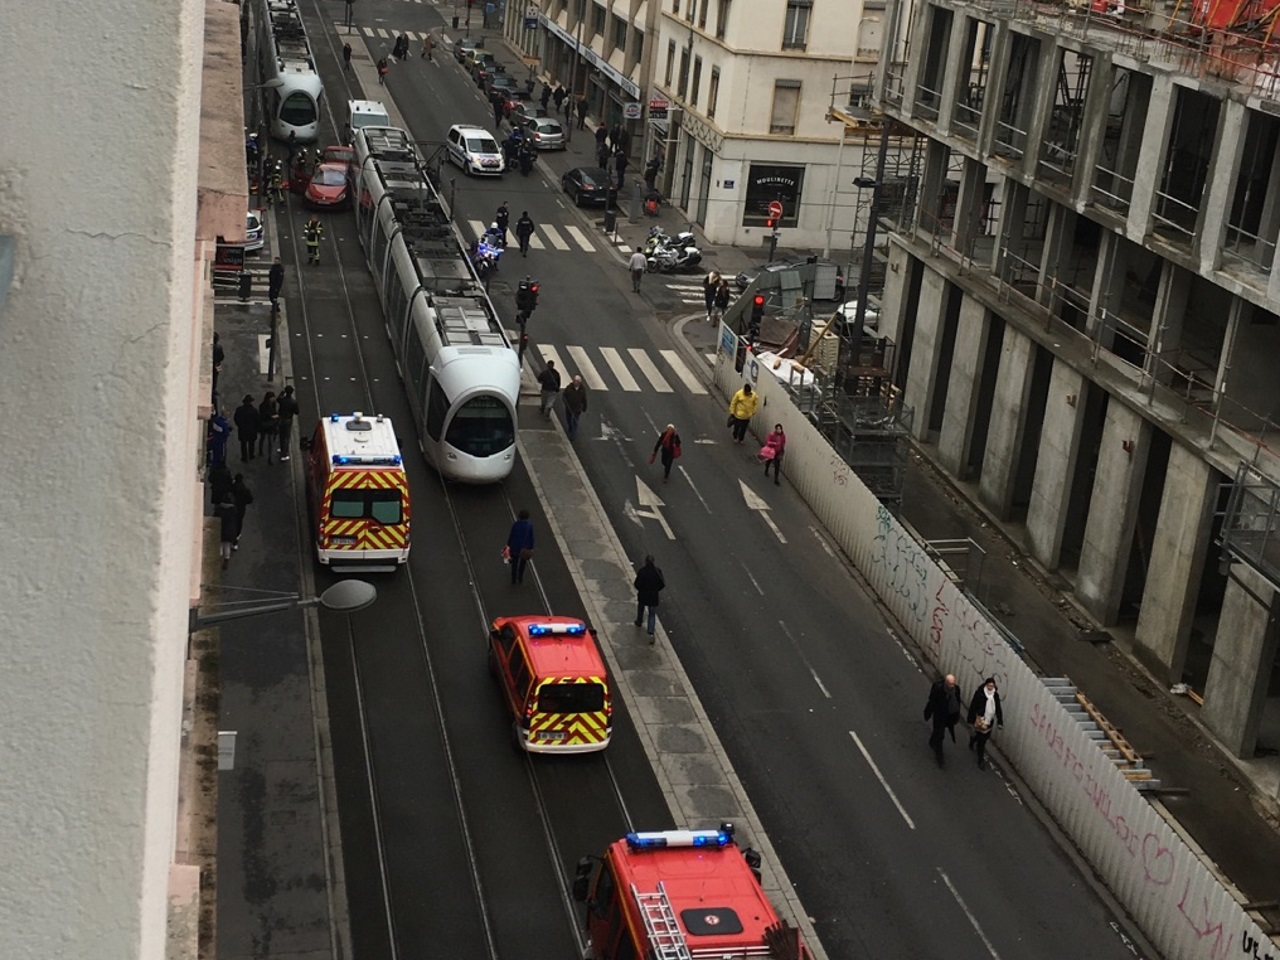 Lyon : accident entre un tram et une voiture, 3 blessés dont 1 grave - Lyon Mag